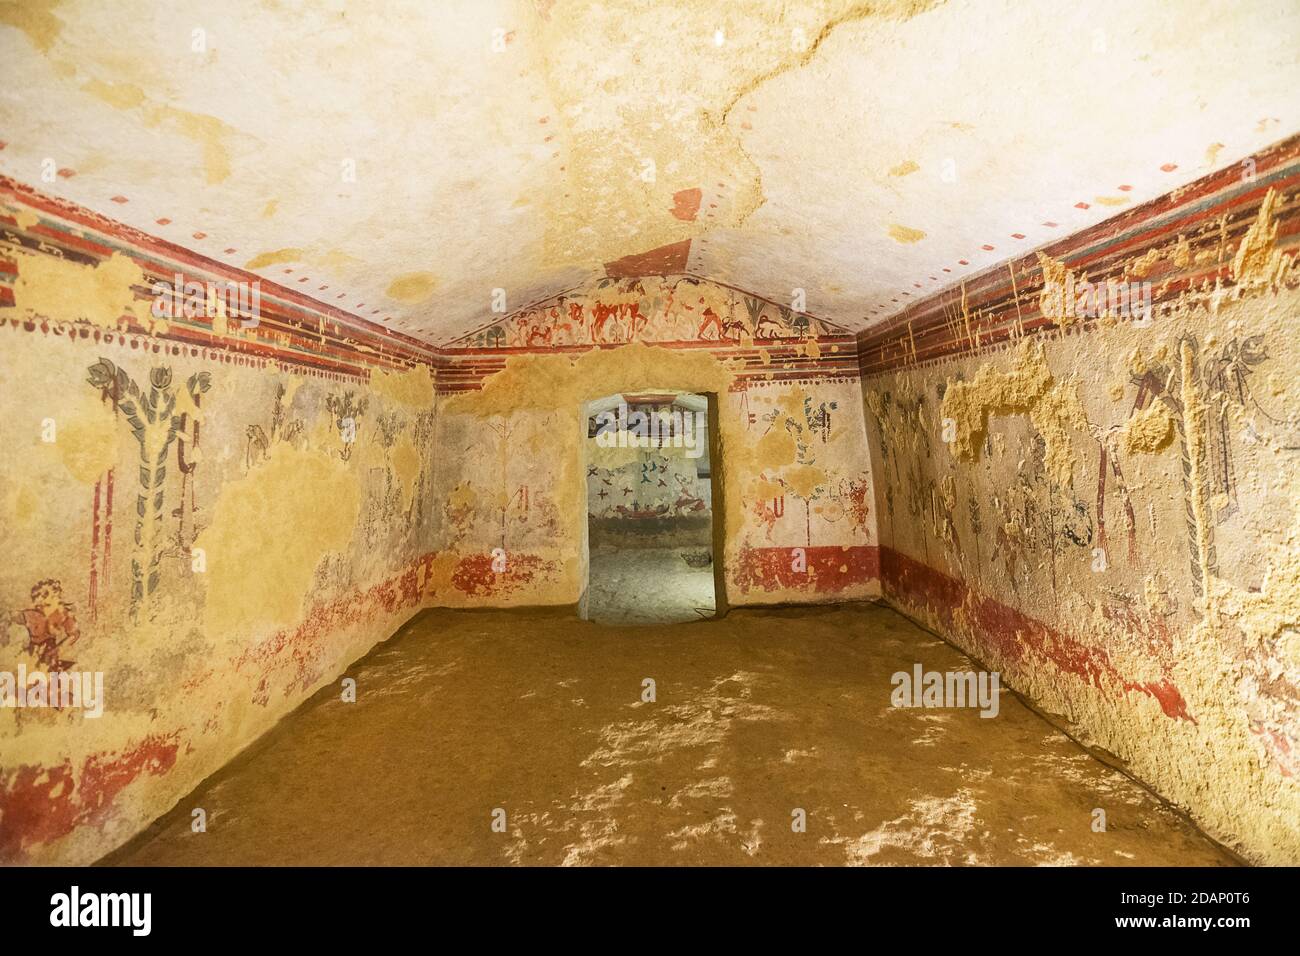 Tarquinia, Italie - 18 septembre 2020 : intérieur d'un tombeau étrusque typique avec des fresques, sans personne Banque D'Images